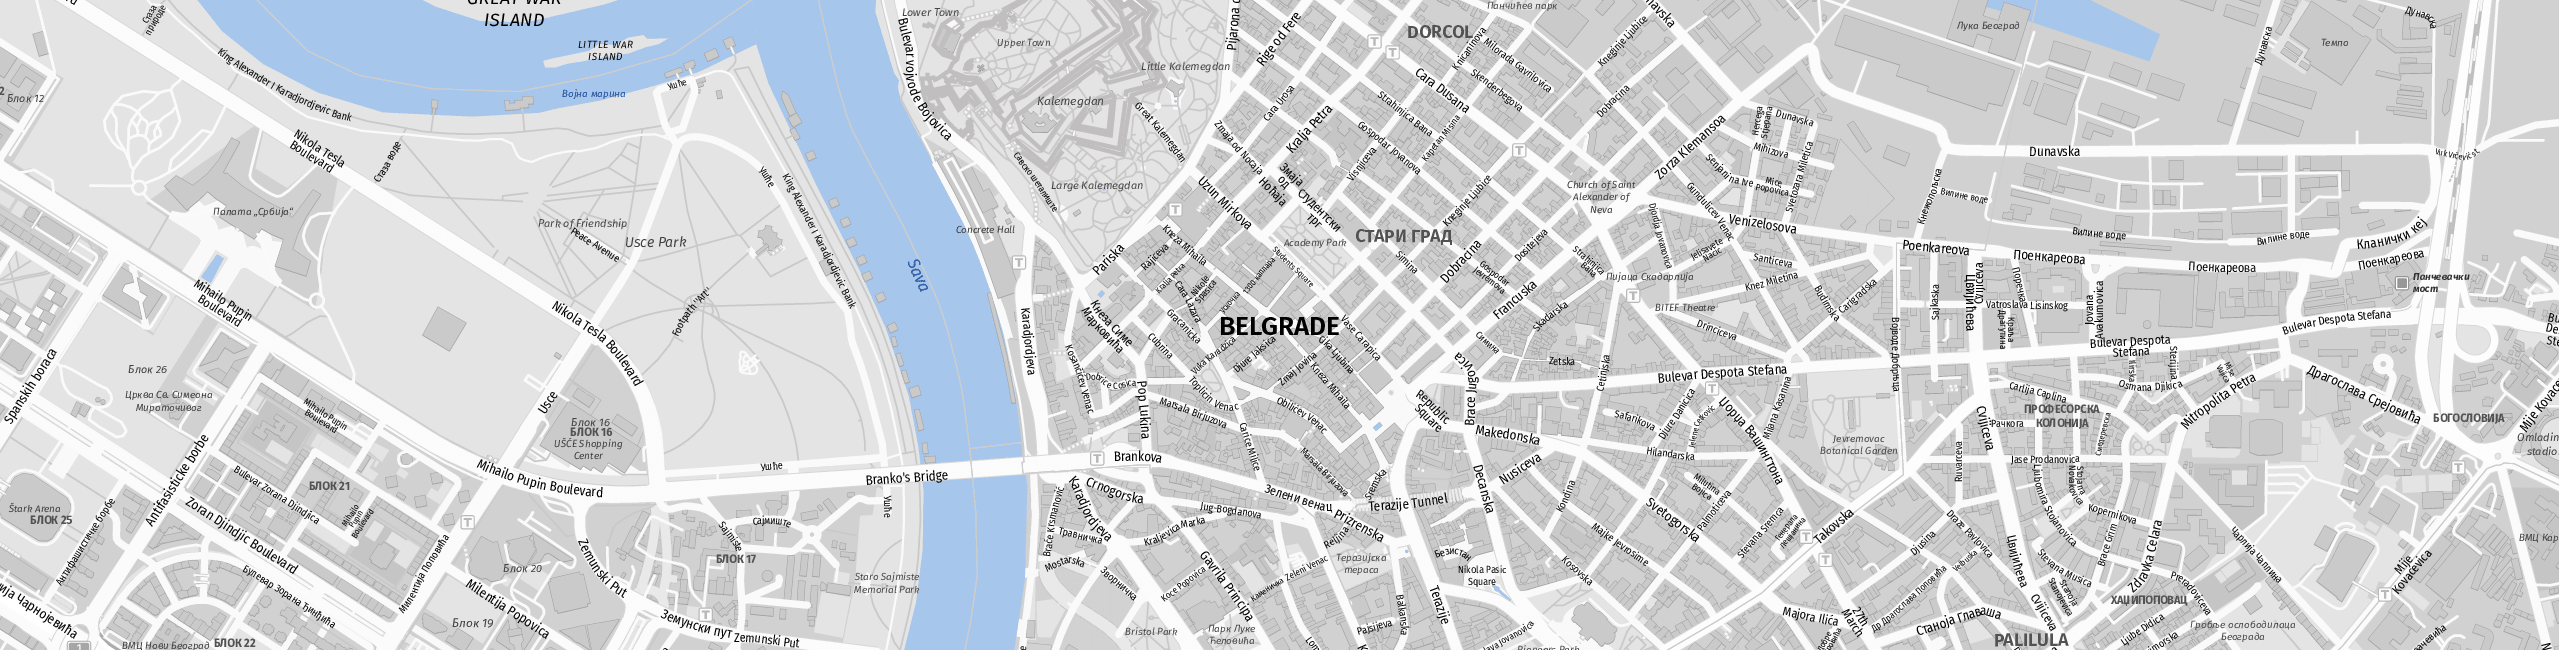 Stadtplan Belgrad zum Downloaden.